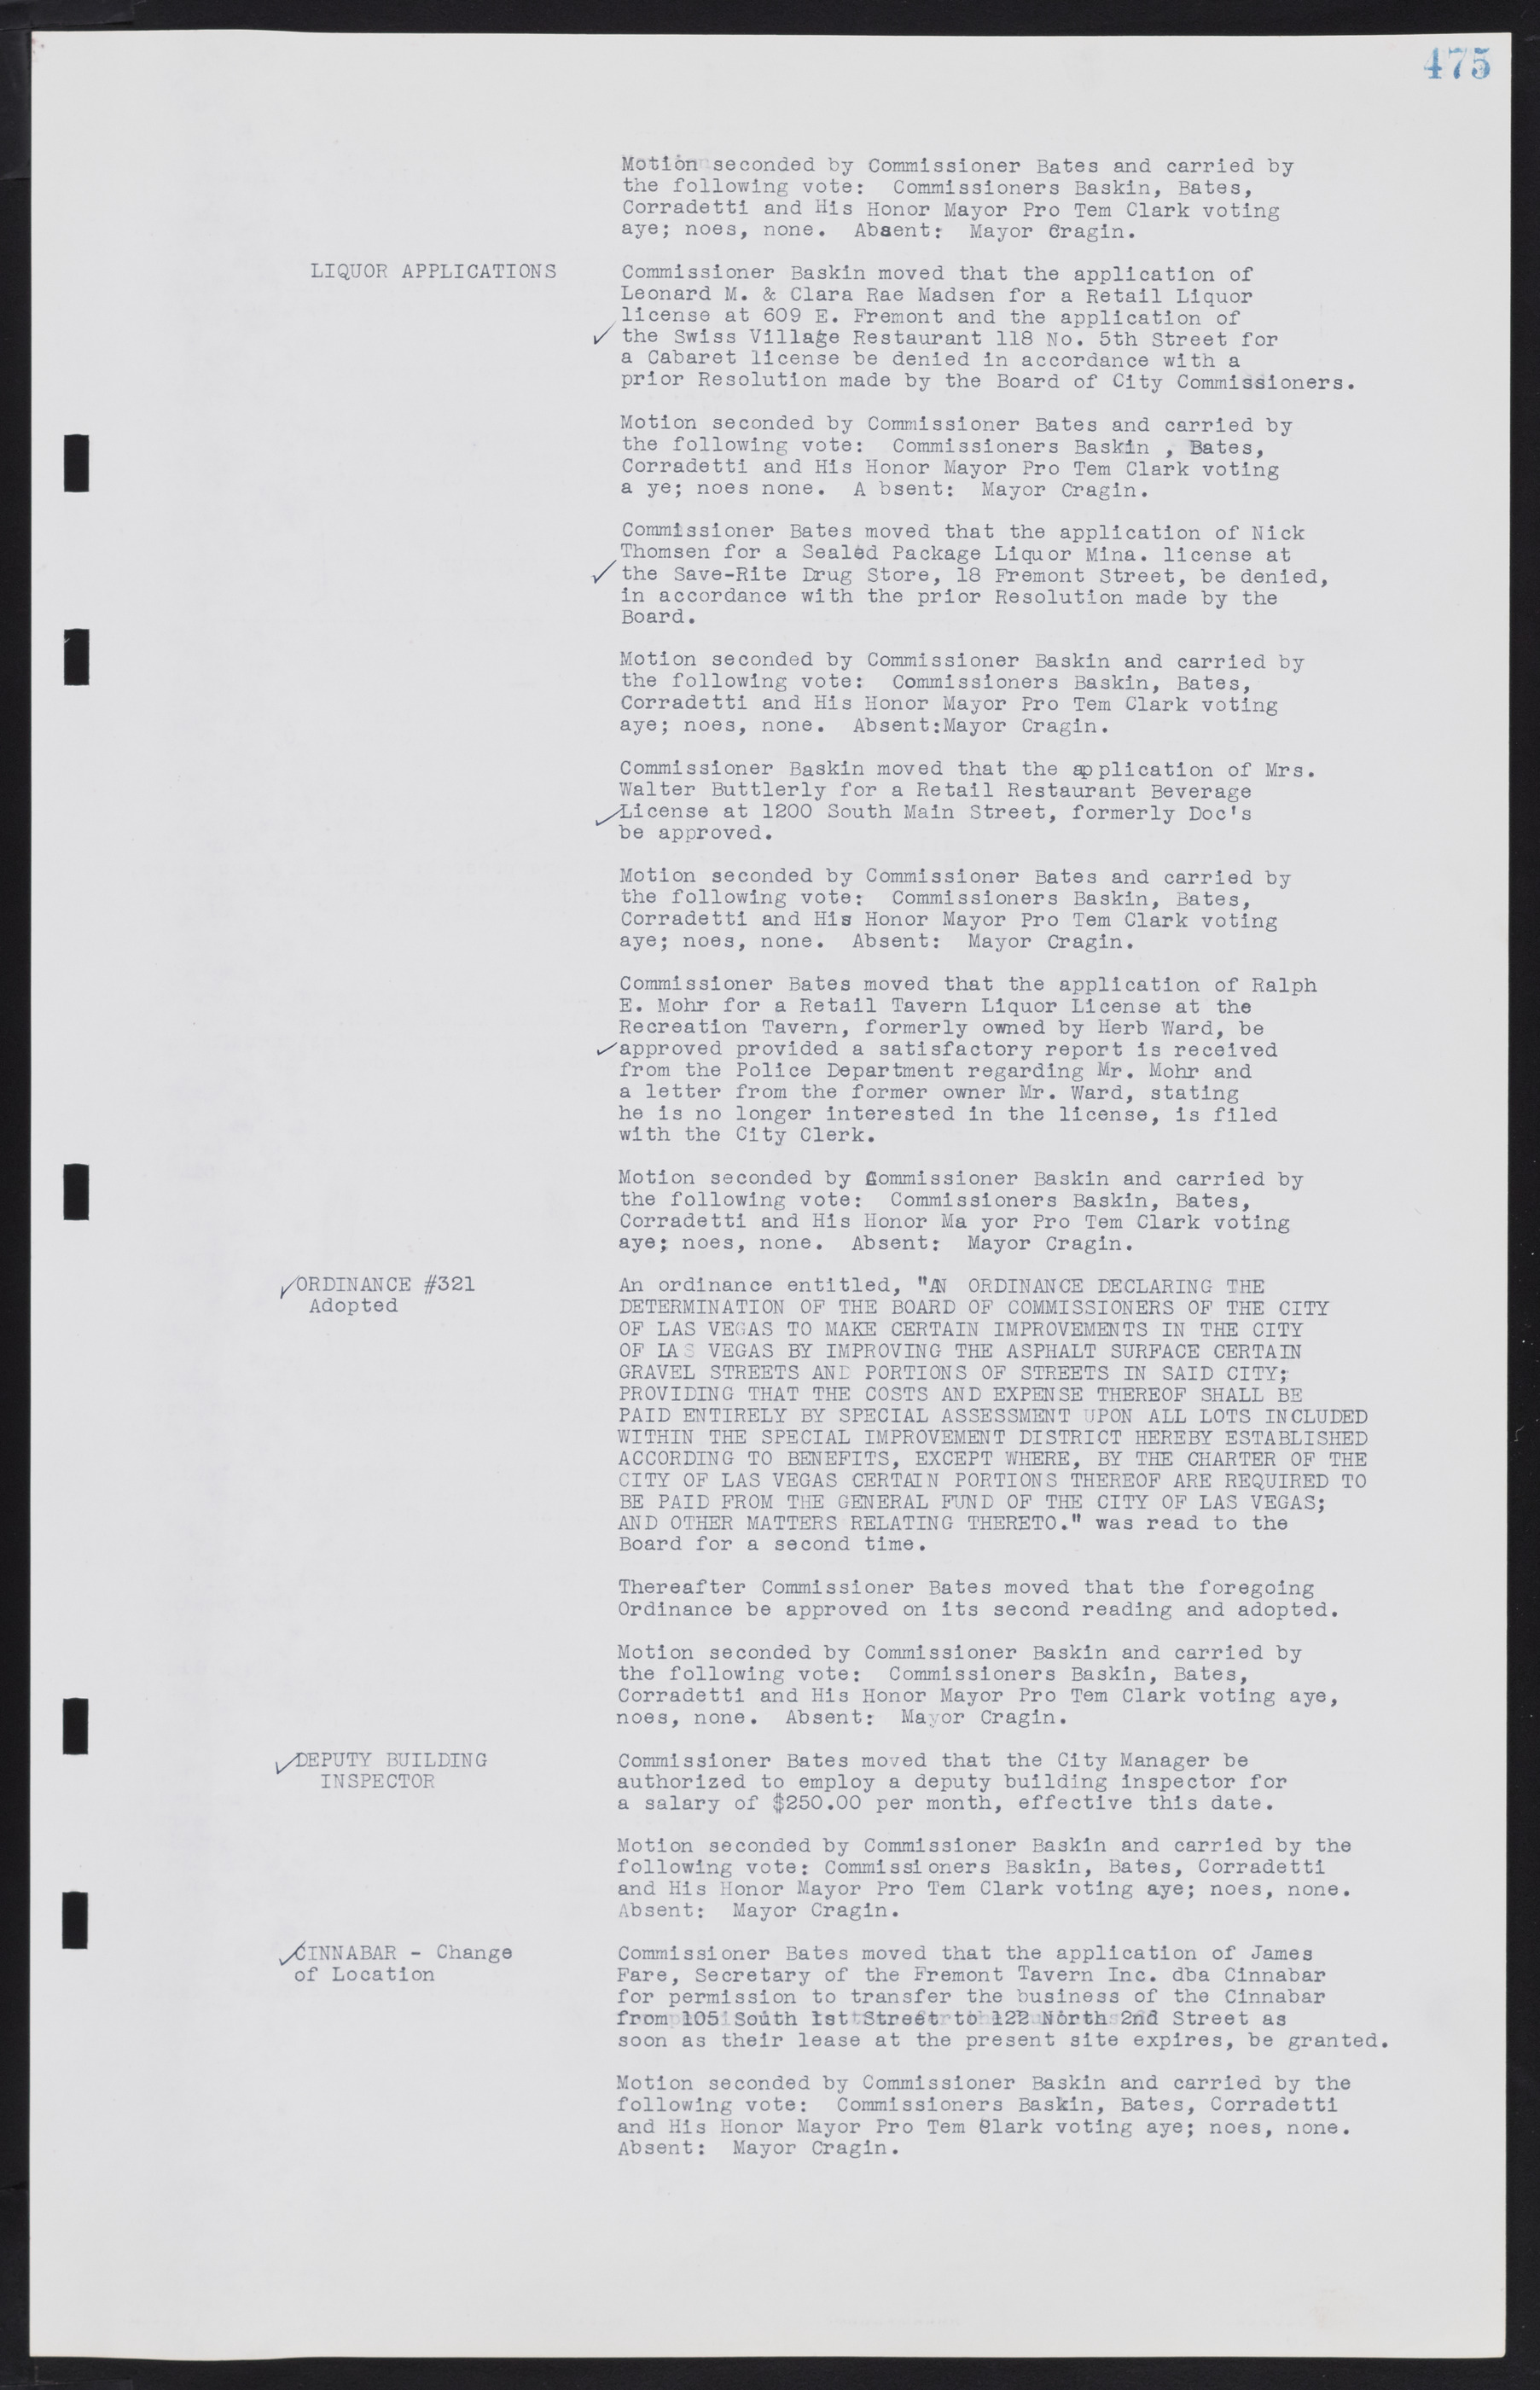 Las Vegas City Commission Minutes, August 11, 1942 to December 30, 1946, lvc000005-506